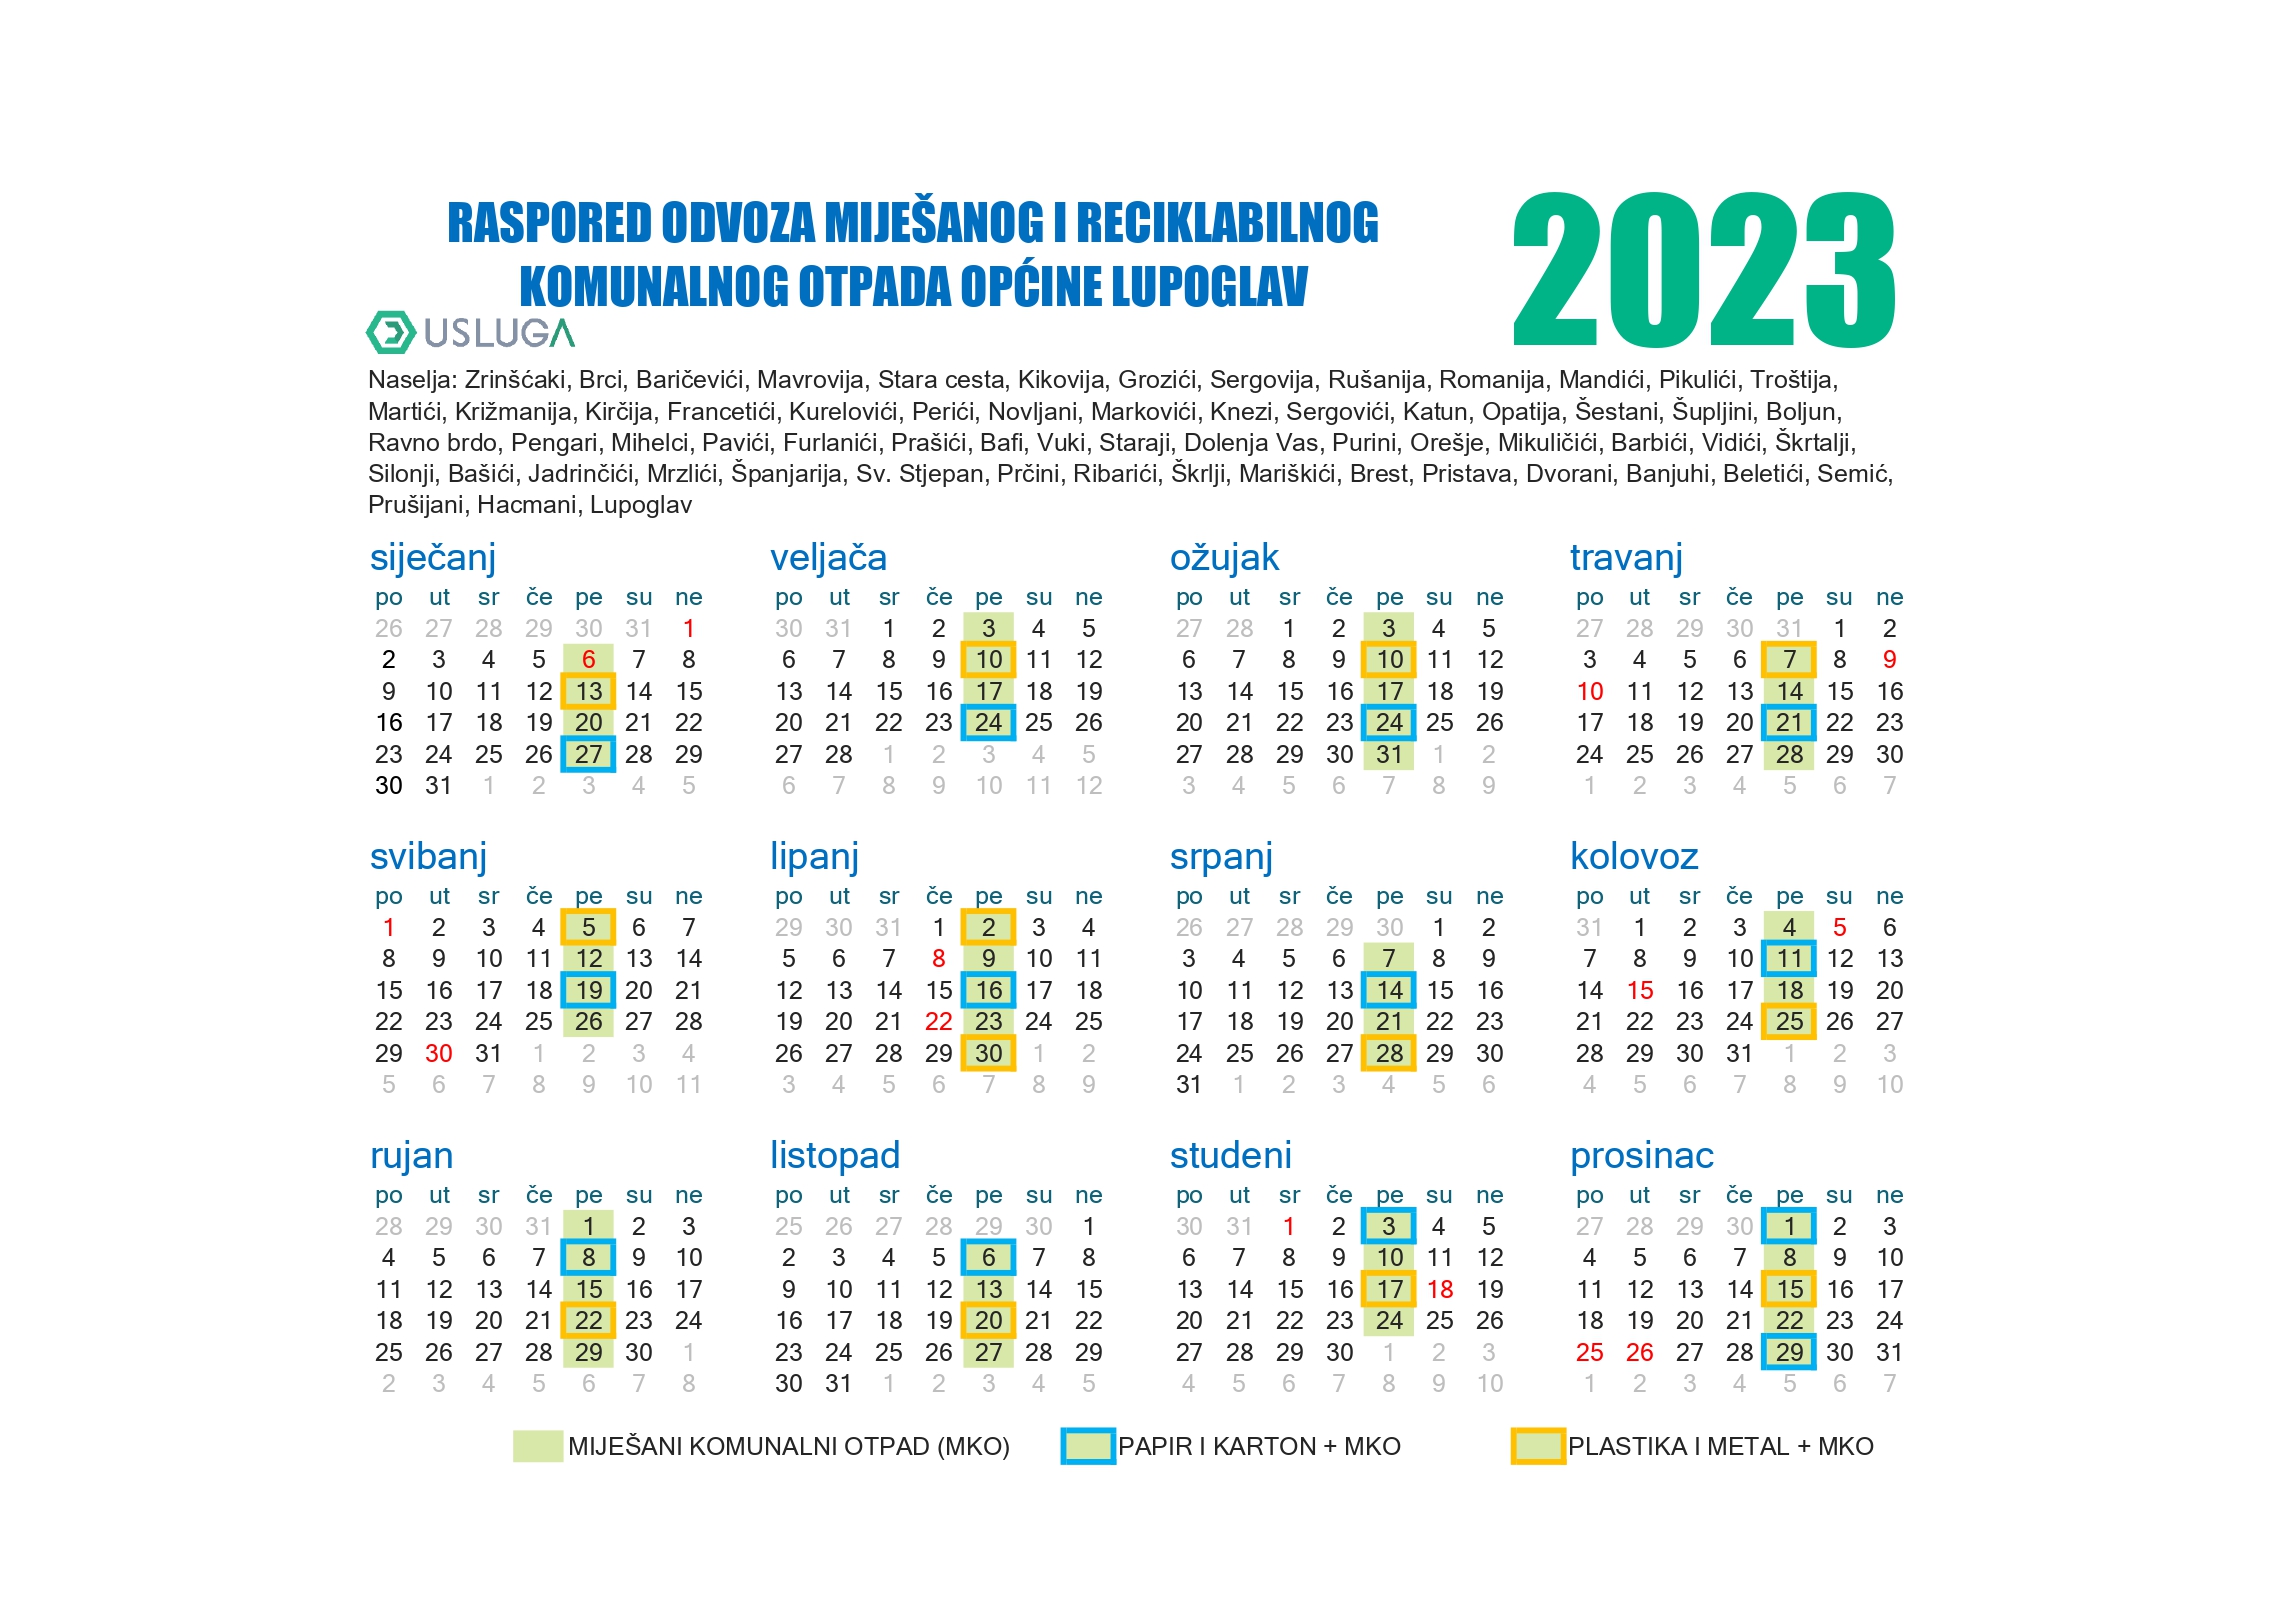 Raspored odvoza mijesanog i reciklabilnog otpada za 2023. godinu page 0001